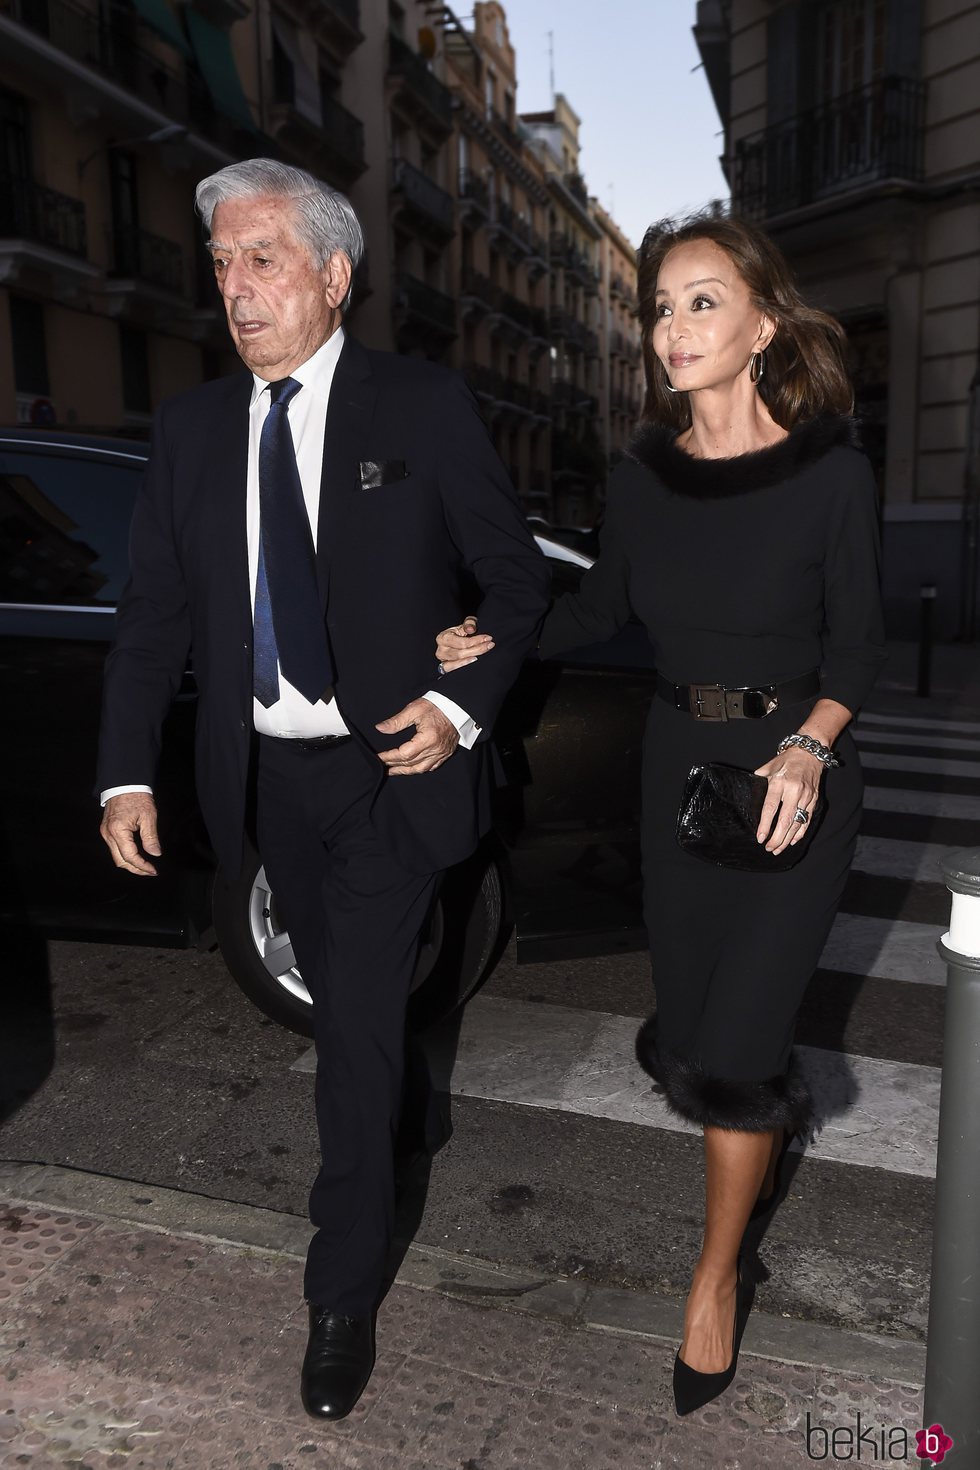 Isabel Preysler y Mario Vargas llosa del brazo en Madrid